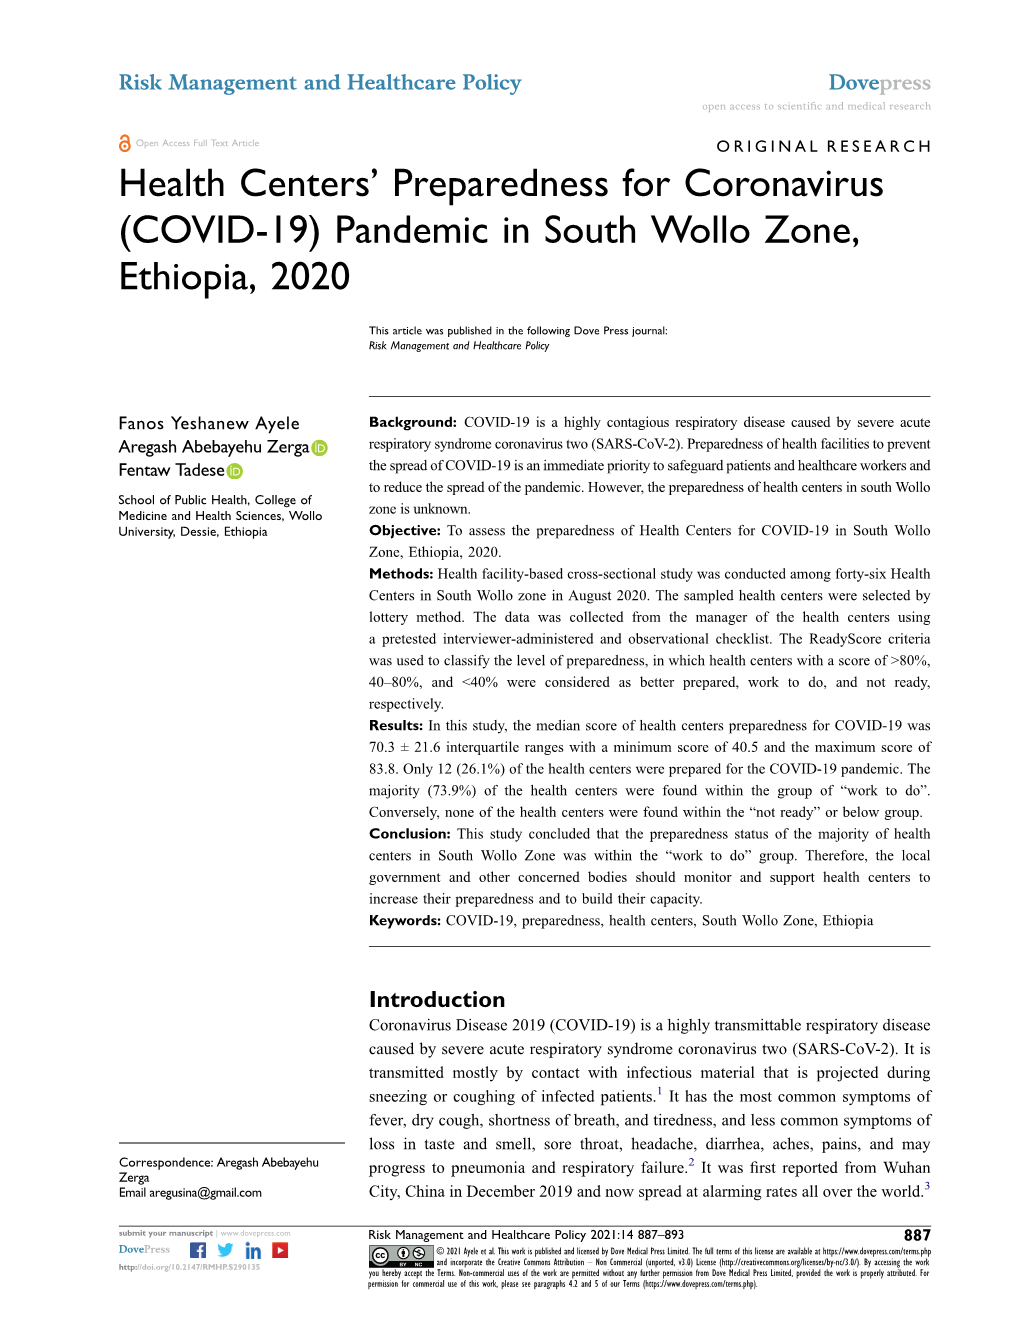 Health Centers' Preparedness for Coronavirus (COVID-19) Pandemic in South Wollo Zone, Ethiopia, 2020